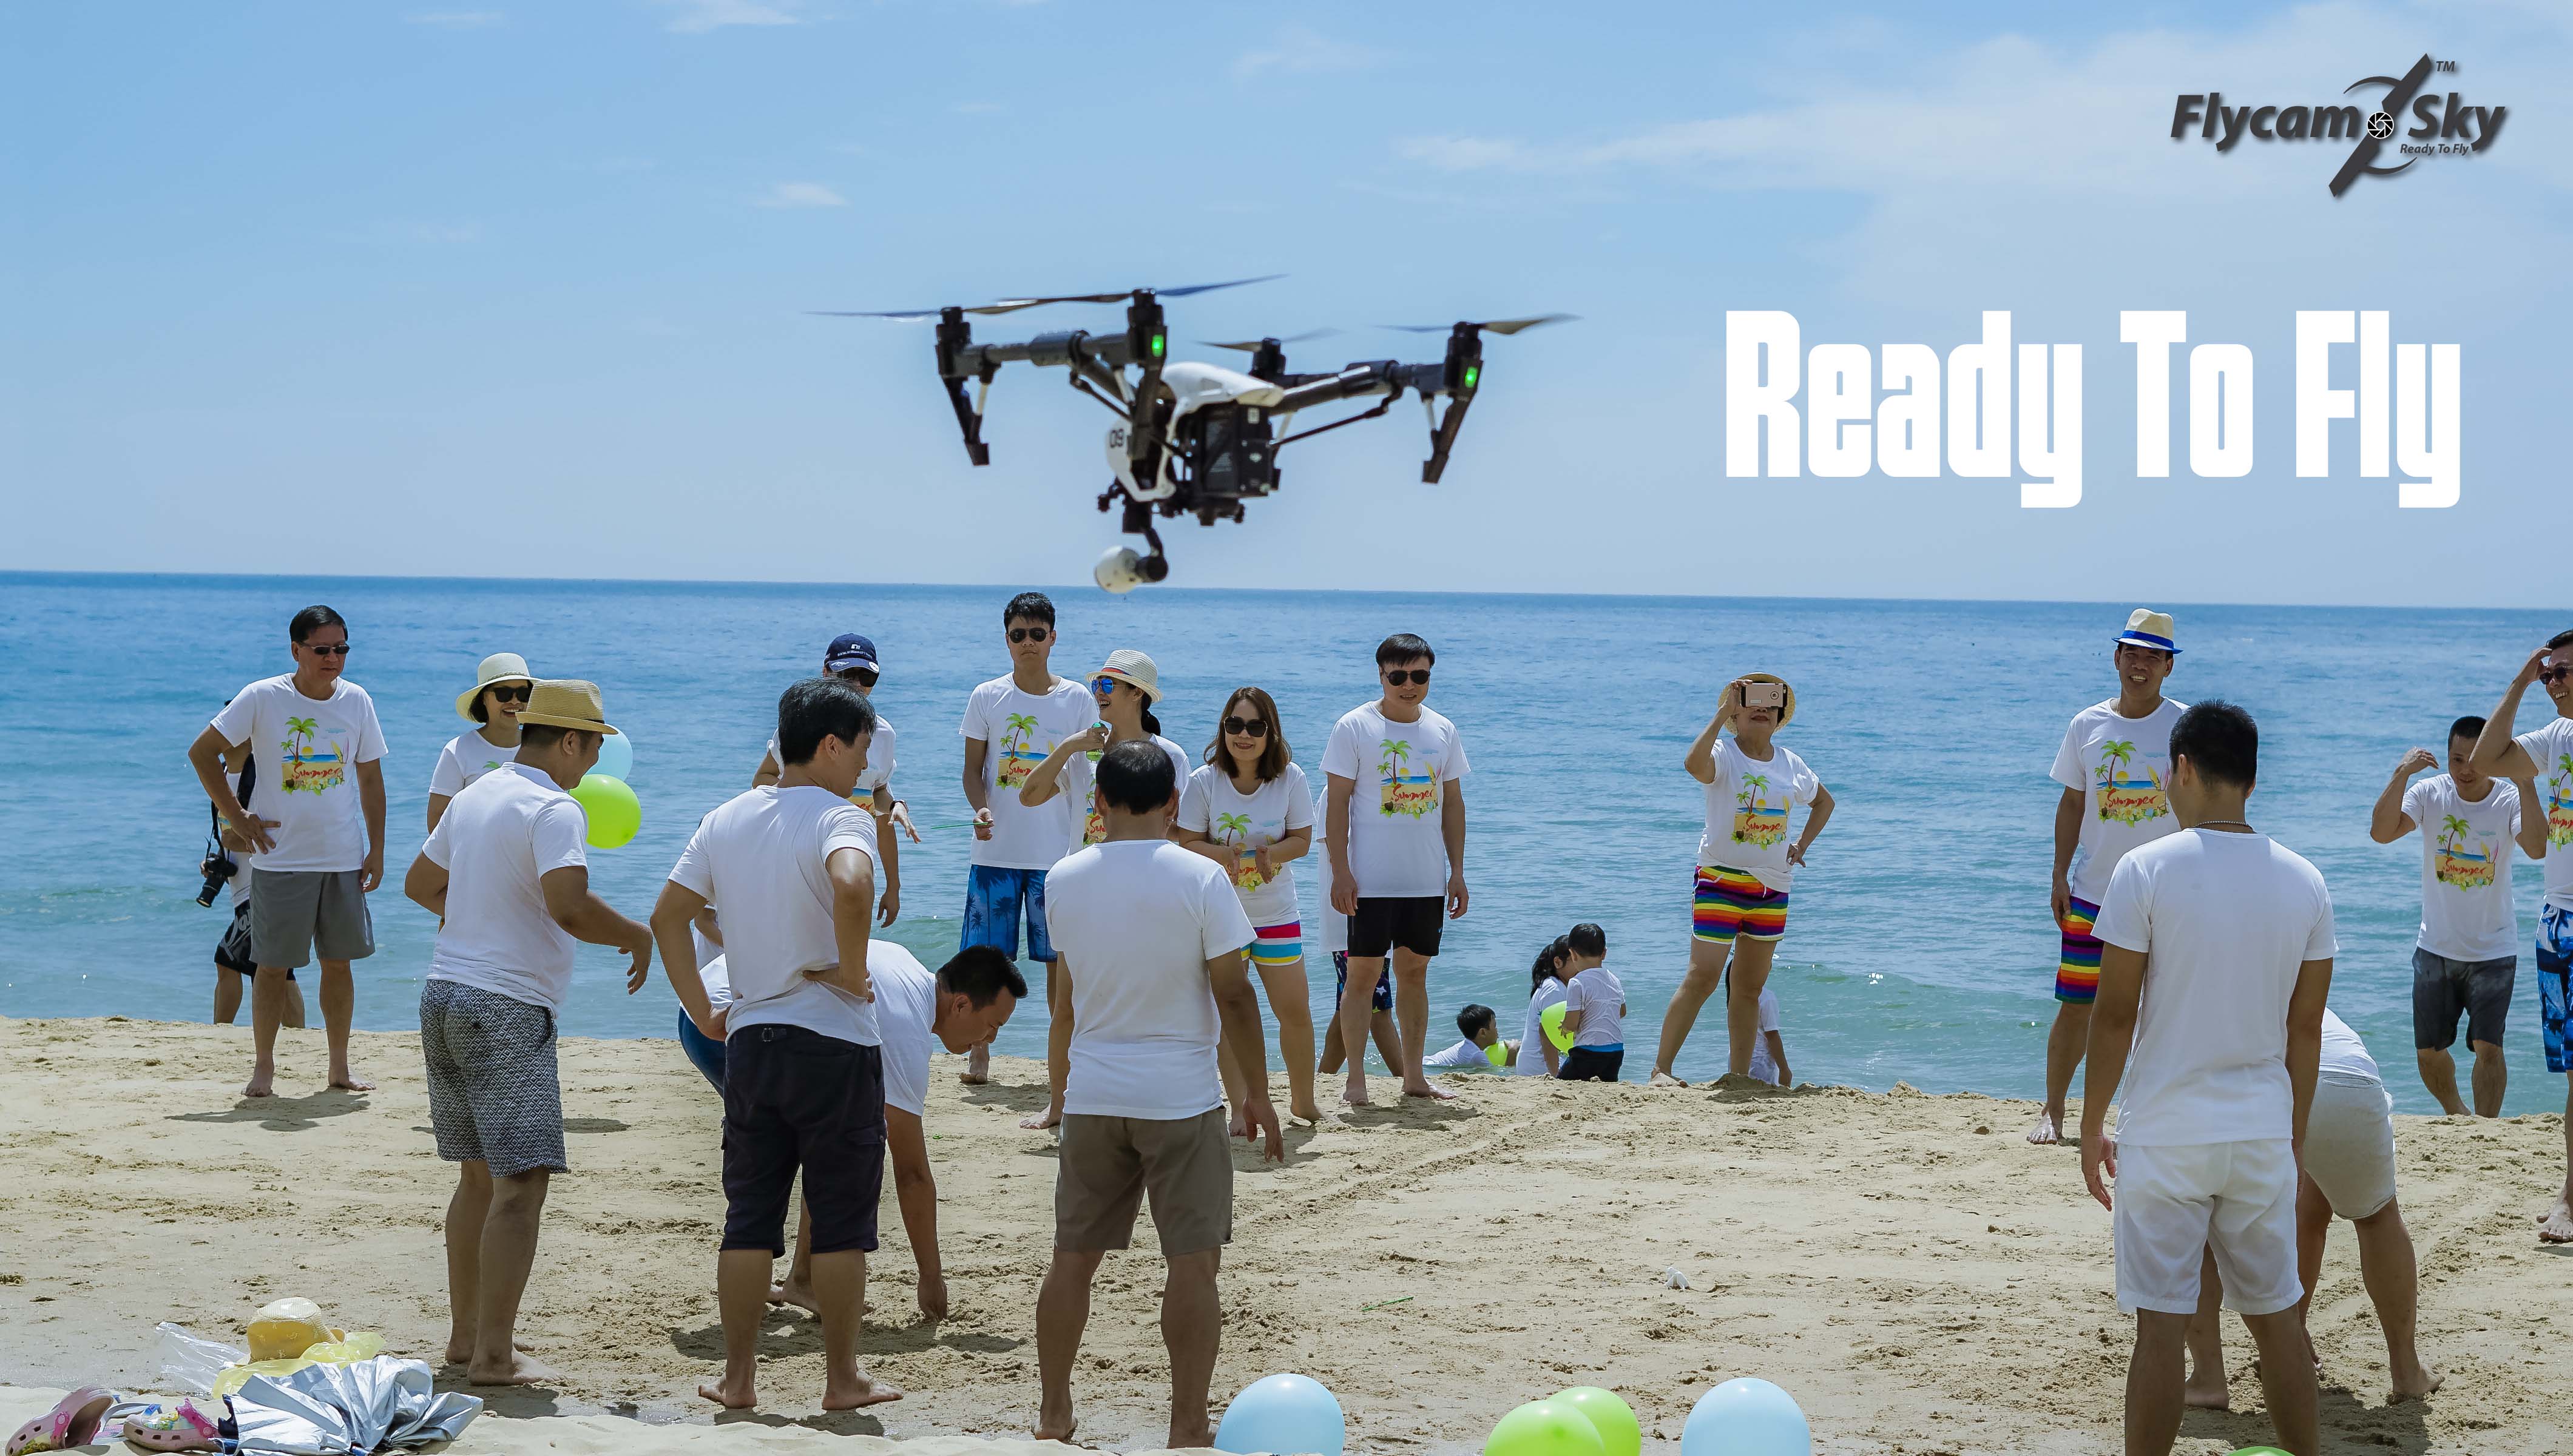 Chụp ảnh team building bằng flycam – Những khoảnh khắc hoàn hảo nhất